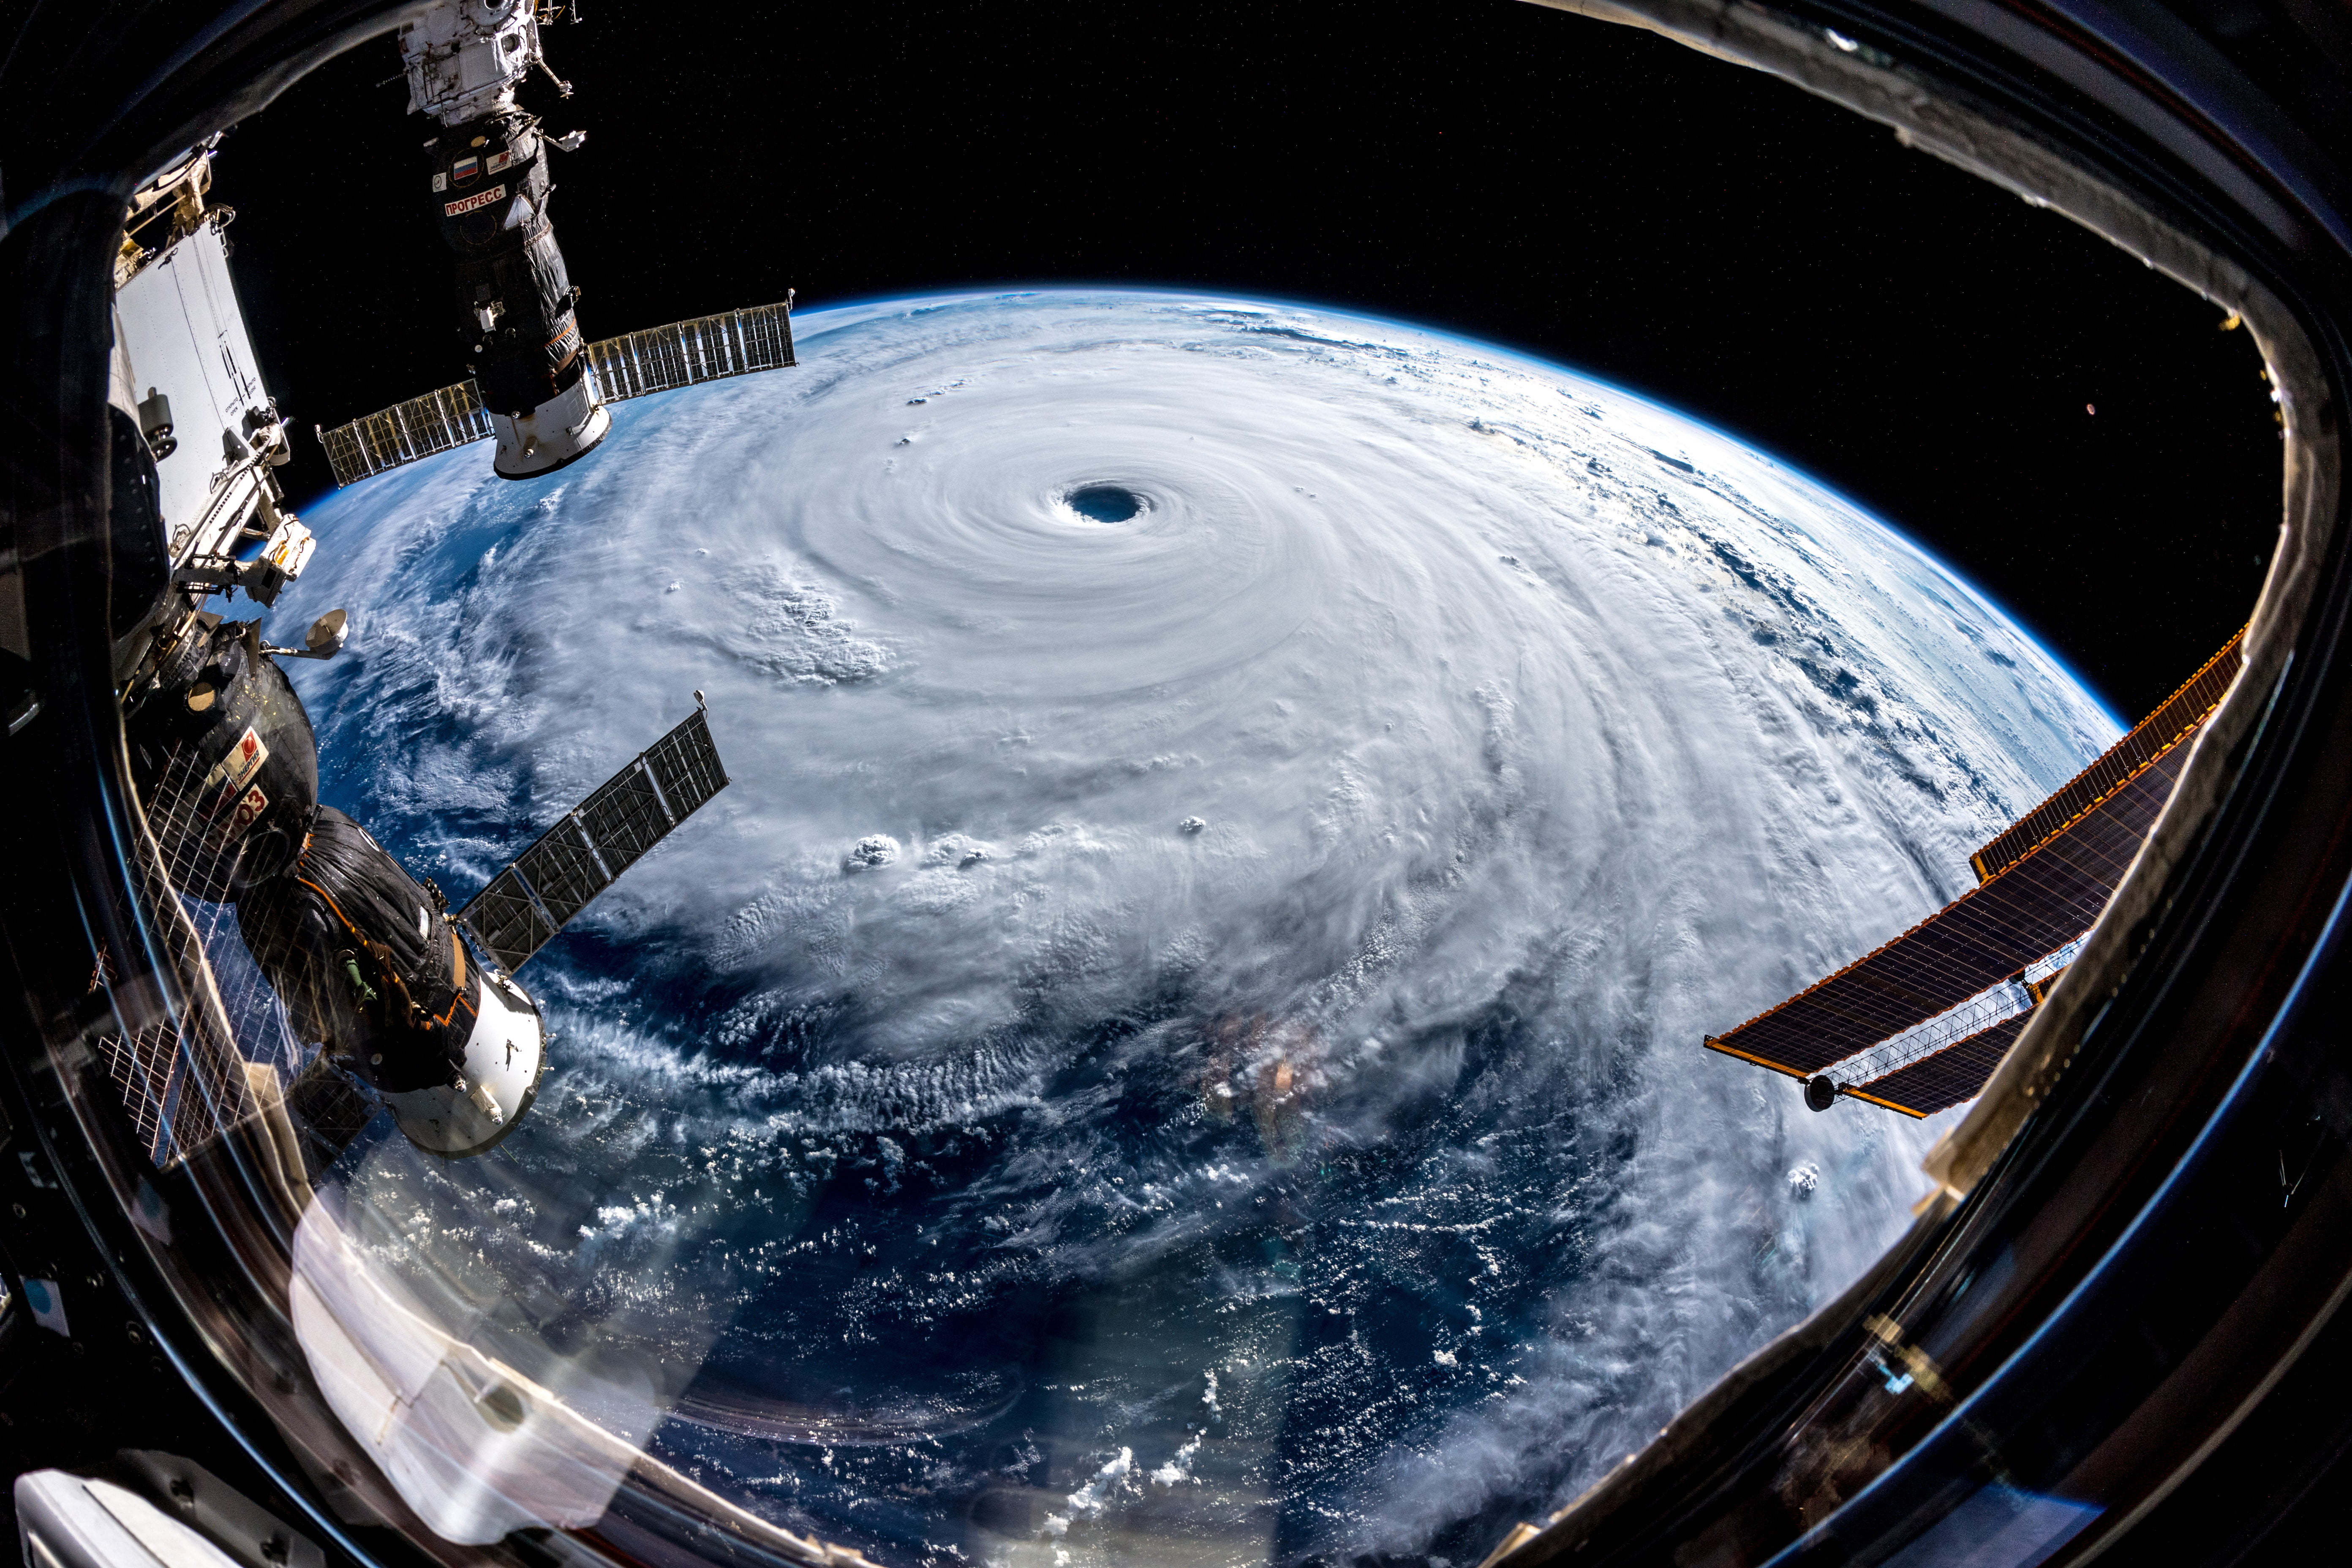 white clouds, Alexander Gerst, hurricane, Typhoon, cyclone, spiral